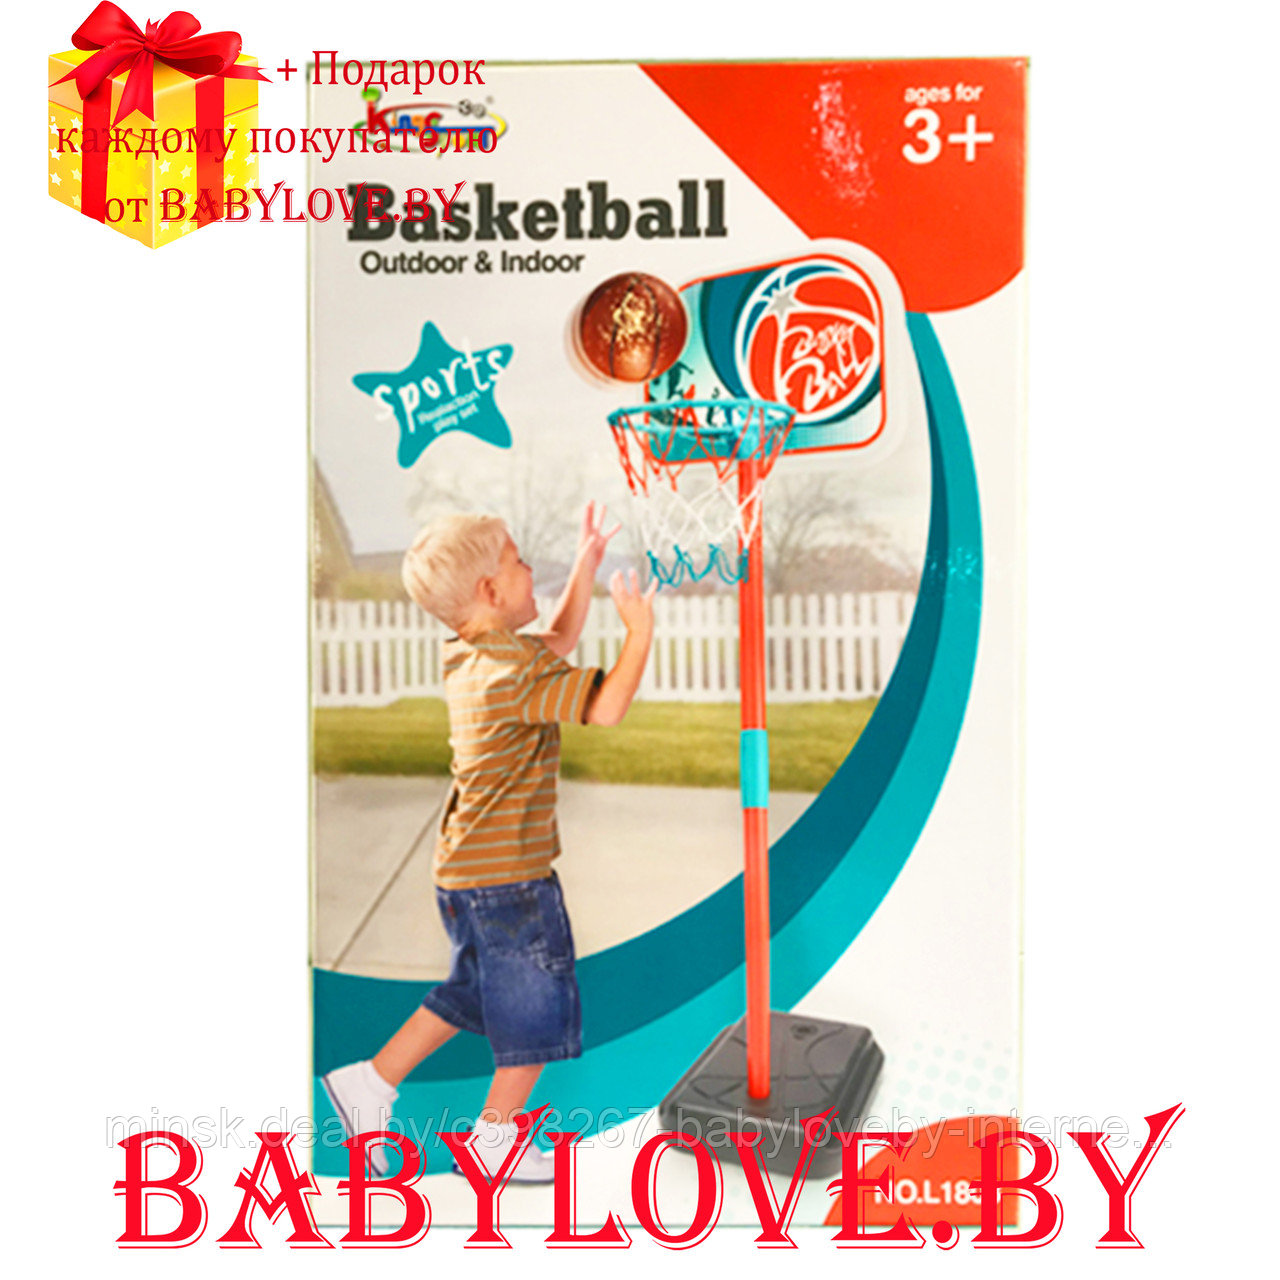 Детское баскетбольное кольцо King sport L1803 на стойке 106 см с мячом